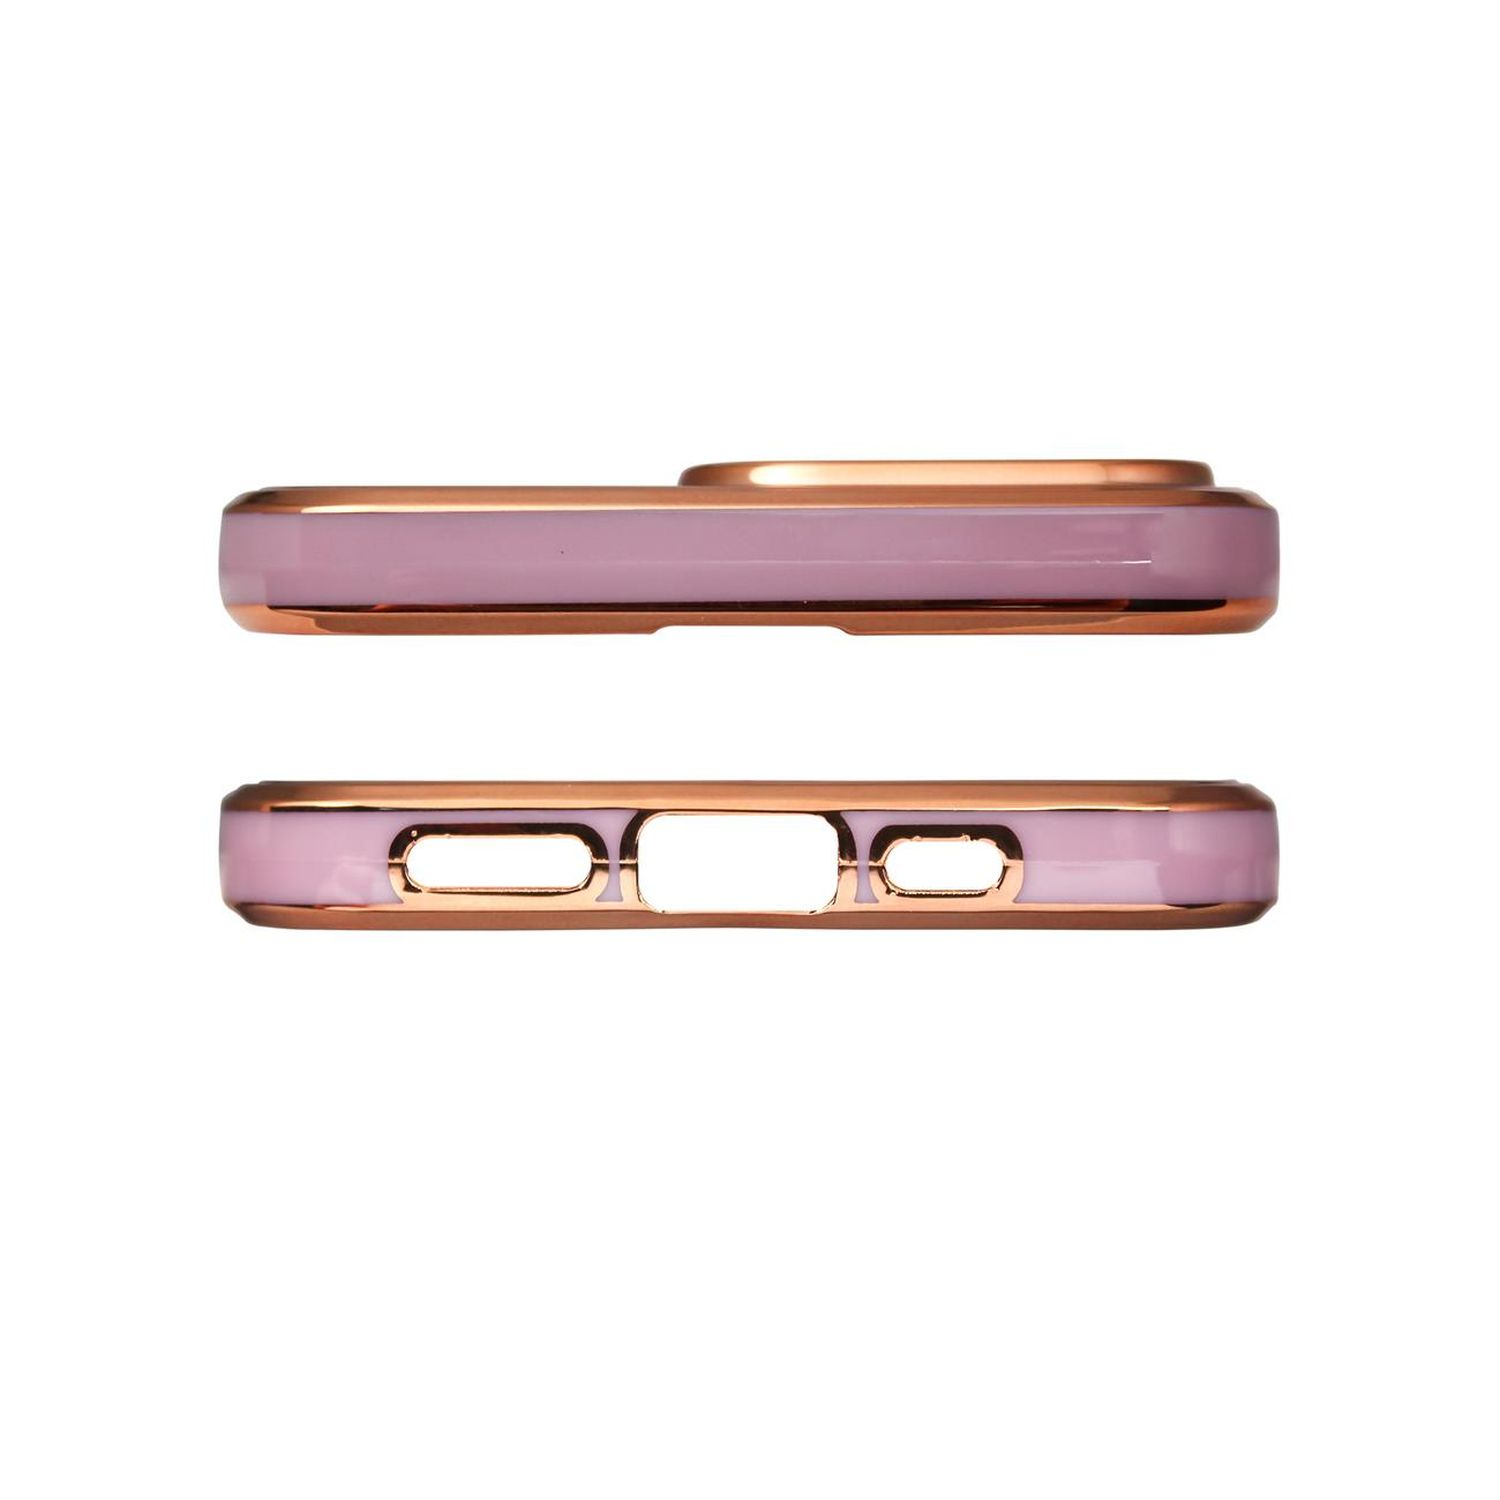 A13 Color Samsung, Galaxy Backcover, Lila-Gold 5G, COFI Case, Lighting